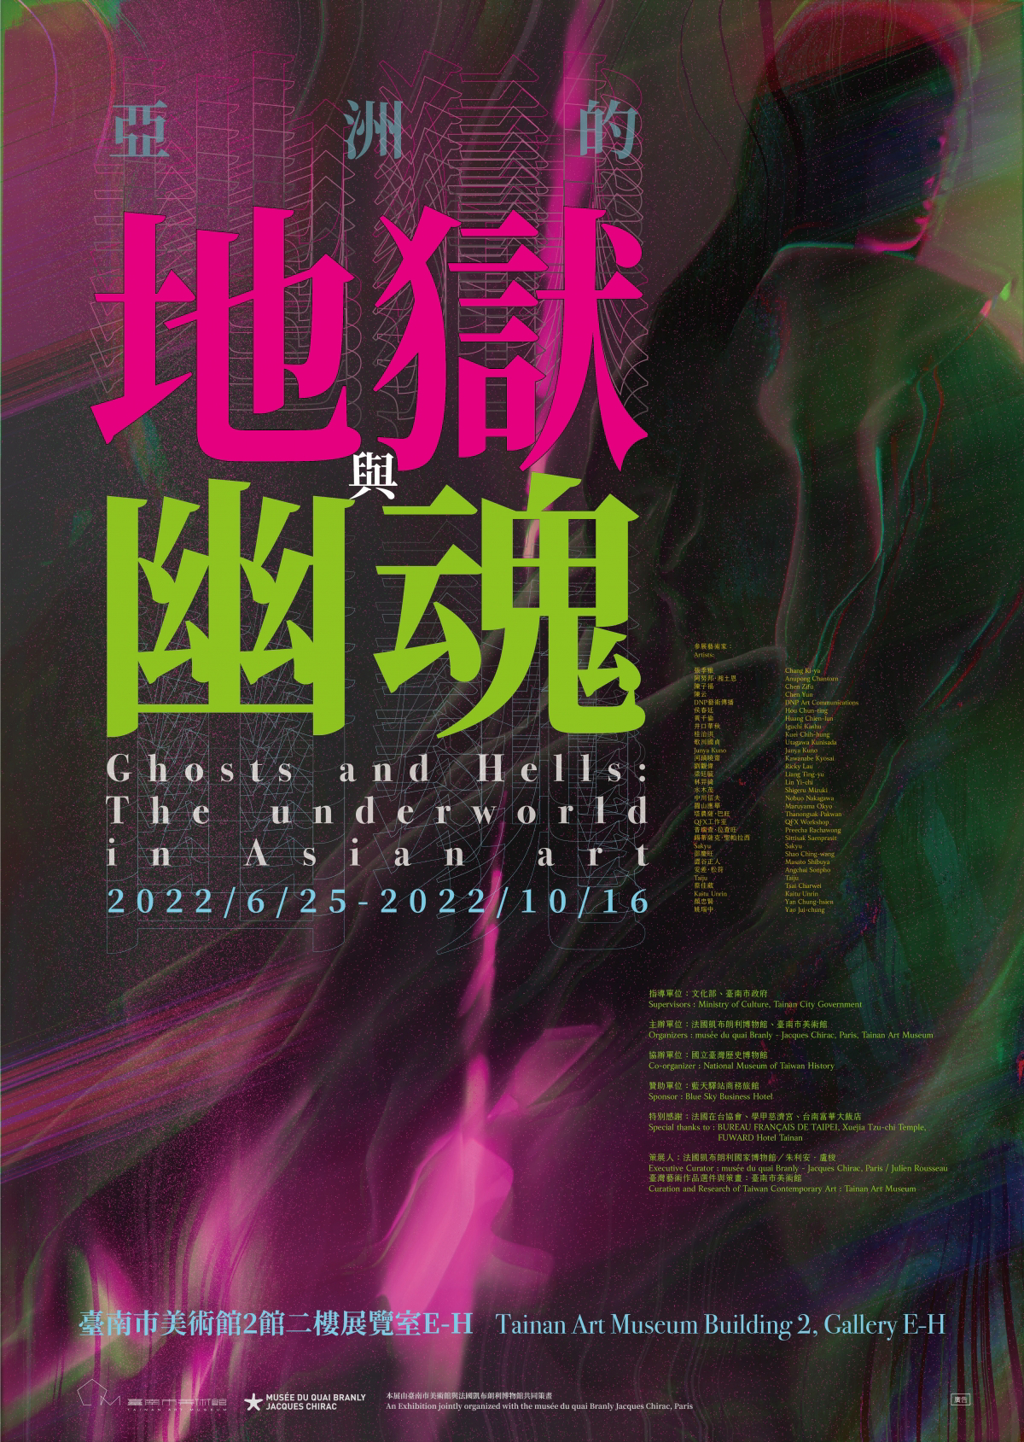 《亞洲的地獄與幽魂》特展檔期為6/25至10/16。(圖/翻攝自台南市美術館)
